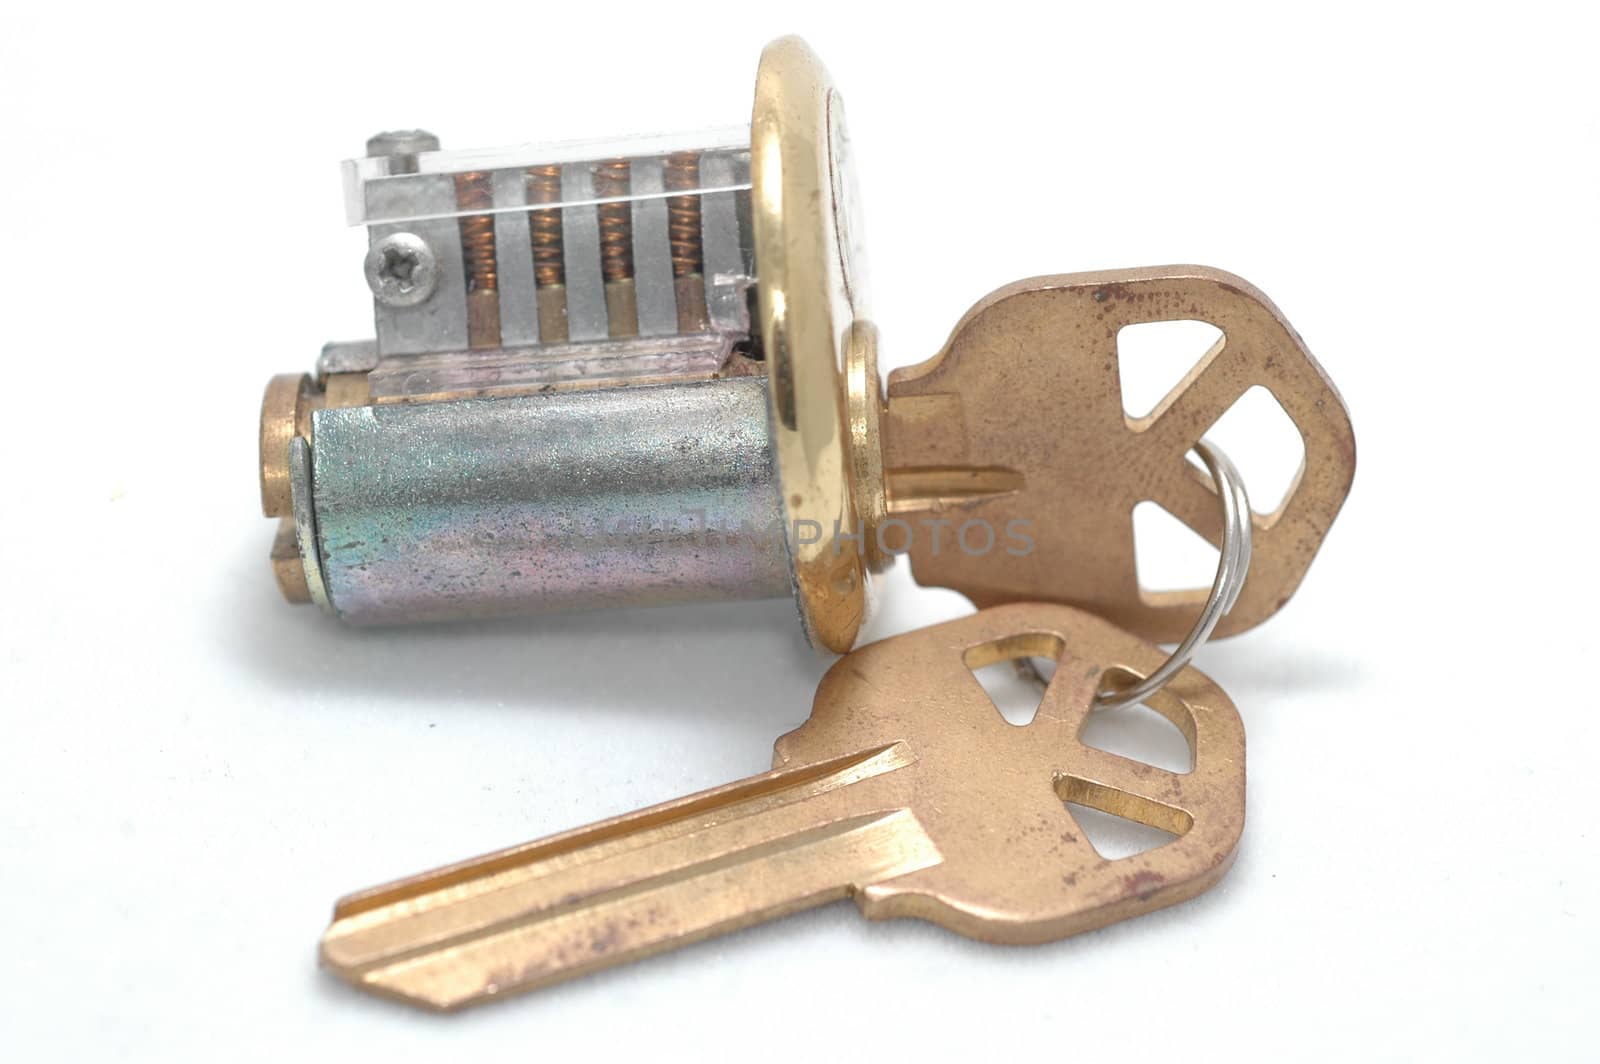 Cutaway lock with right key by edan